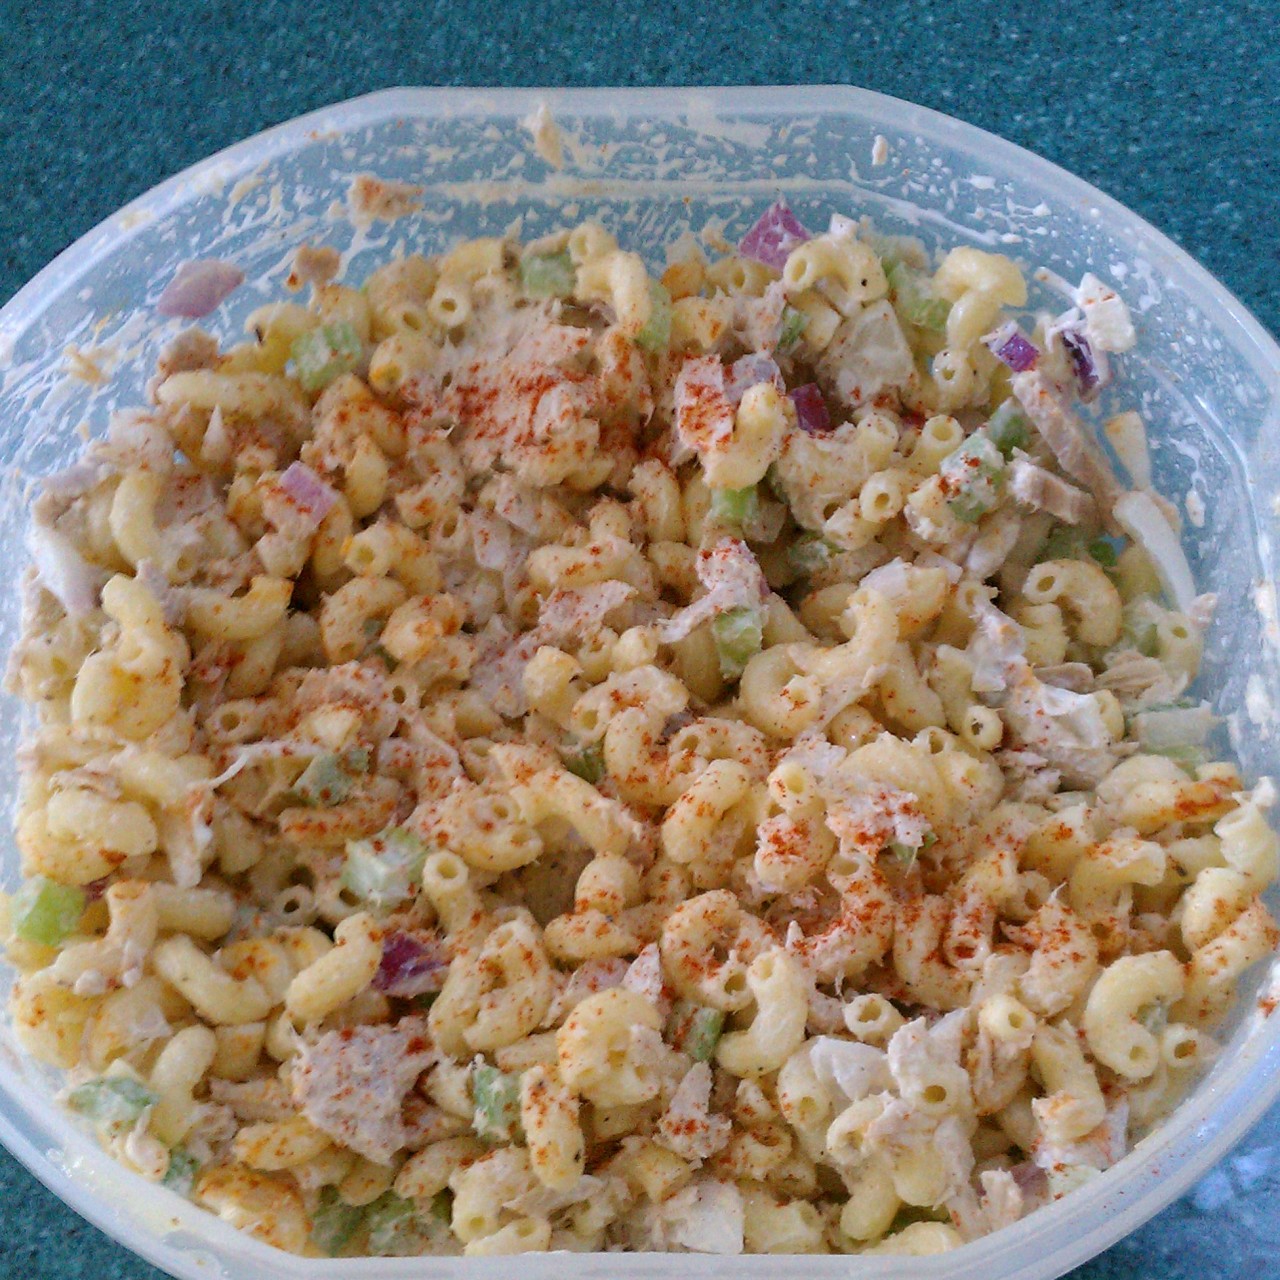 easy macaroni salad recipe with tuna